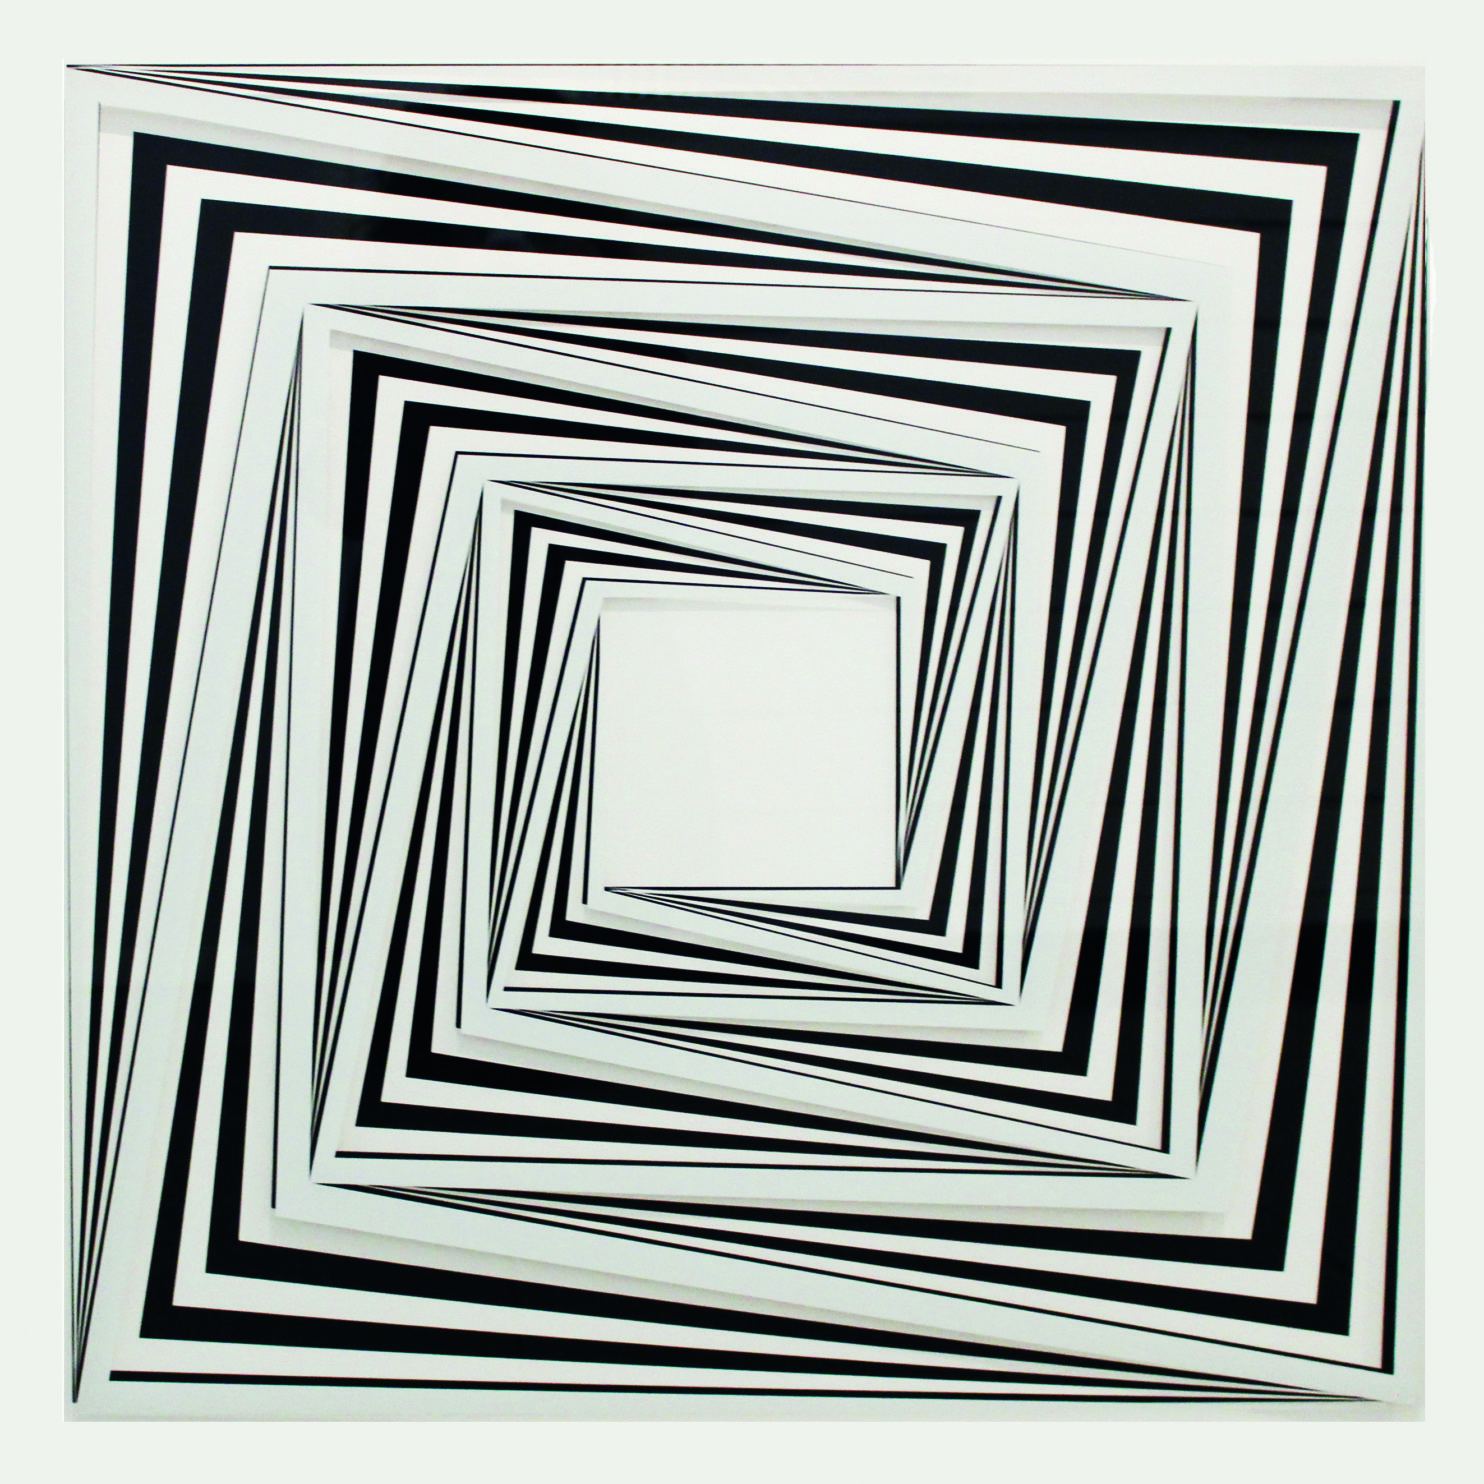 MORANDINI MARCELLO, 633 A, 2015, Serigrafia su cartoncino e plexiglass,80 x 80 cm, Ed. 30